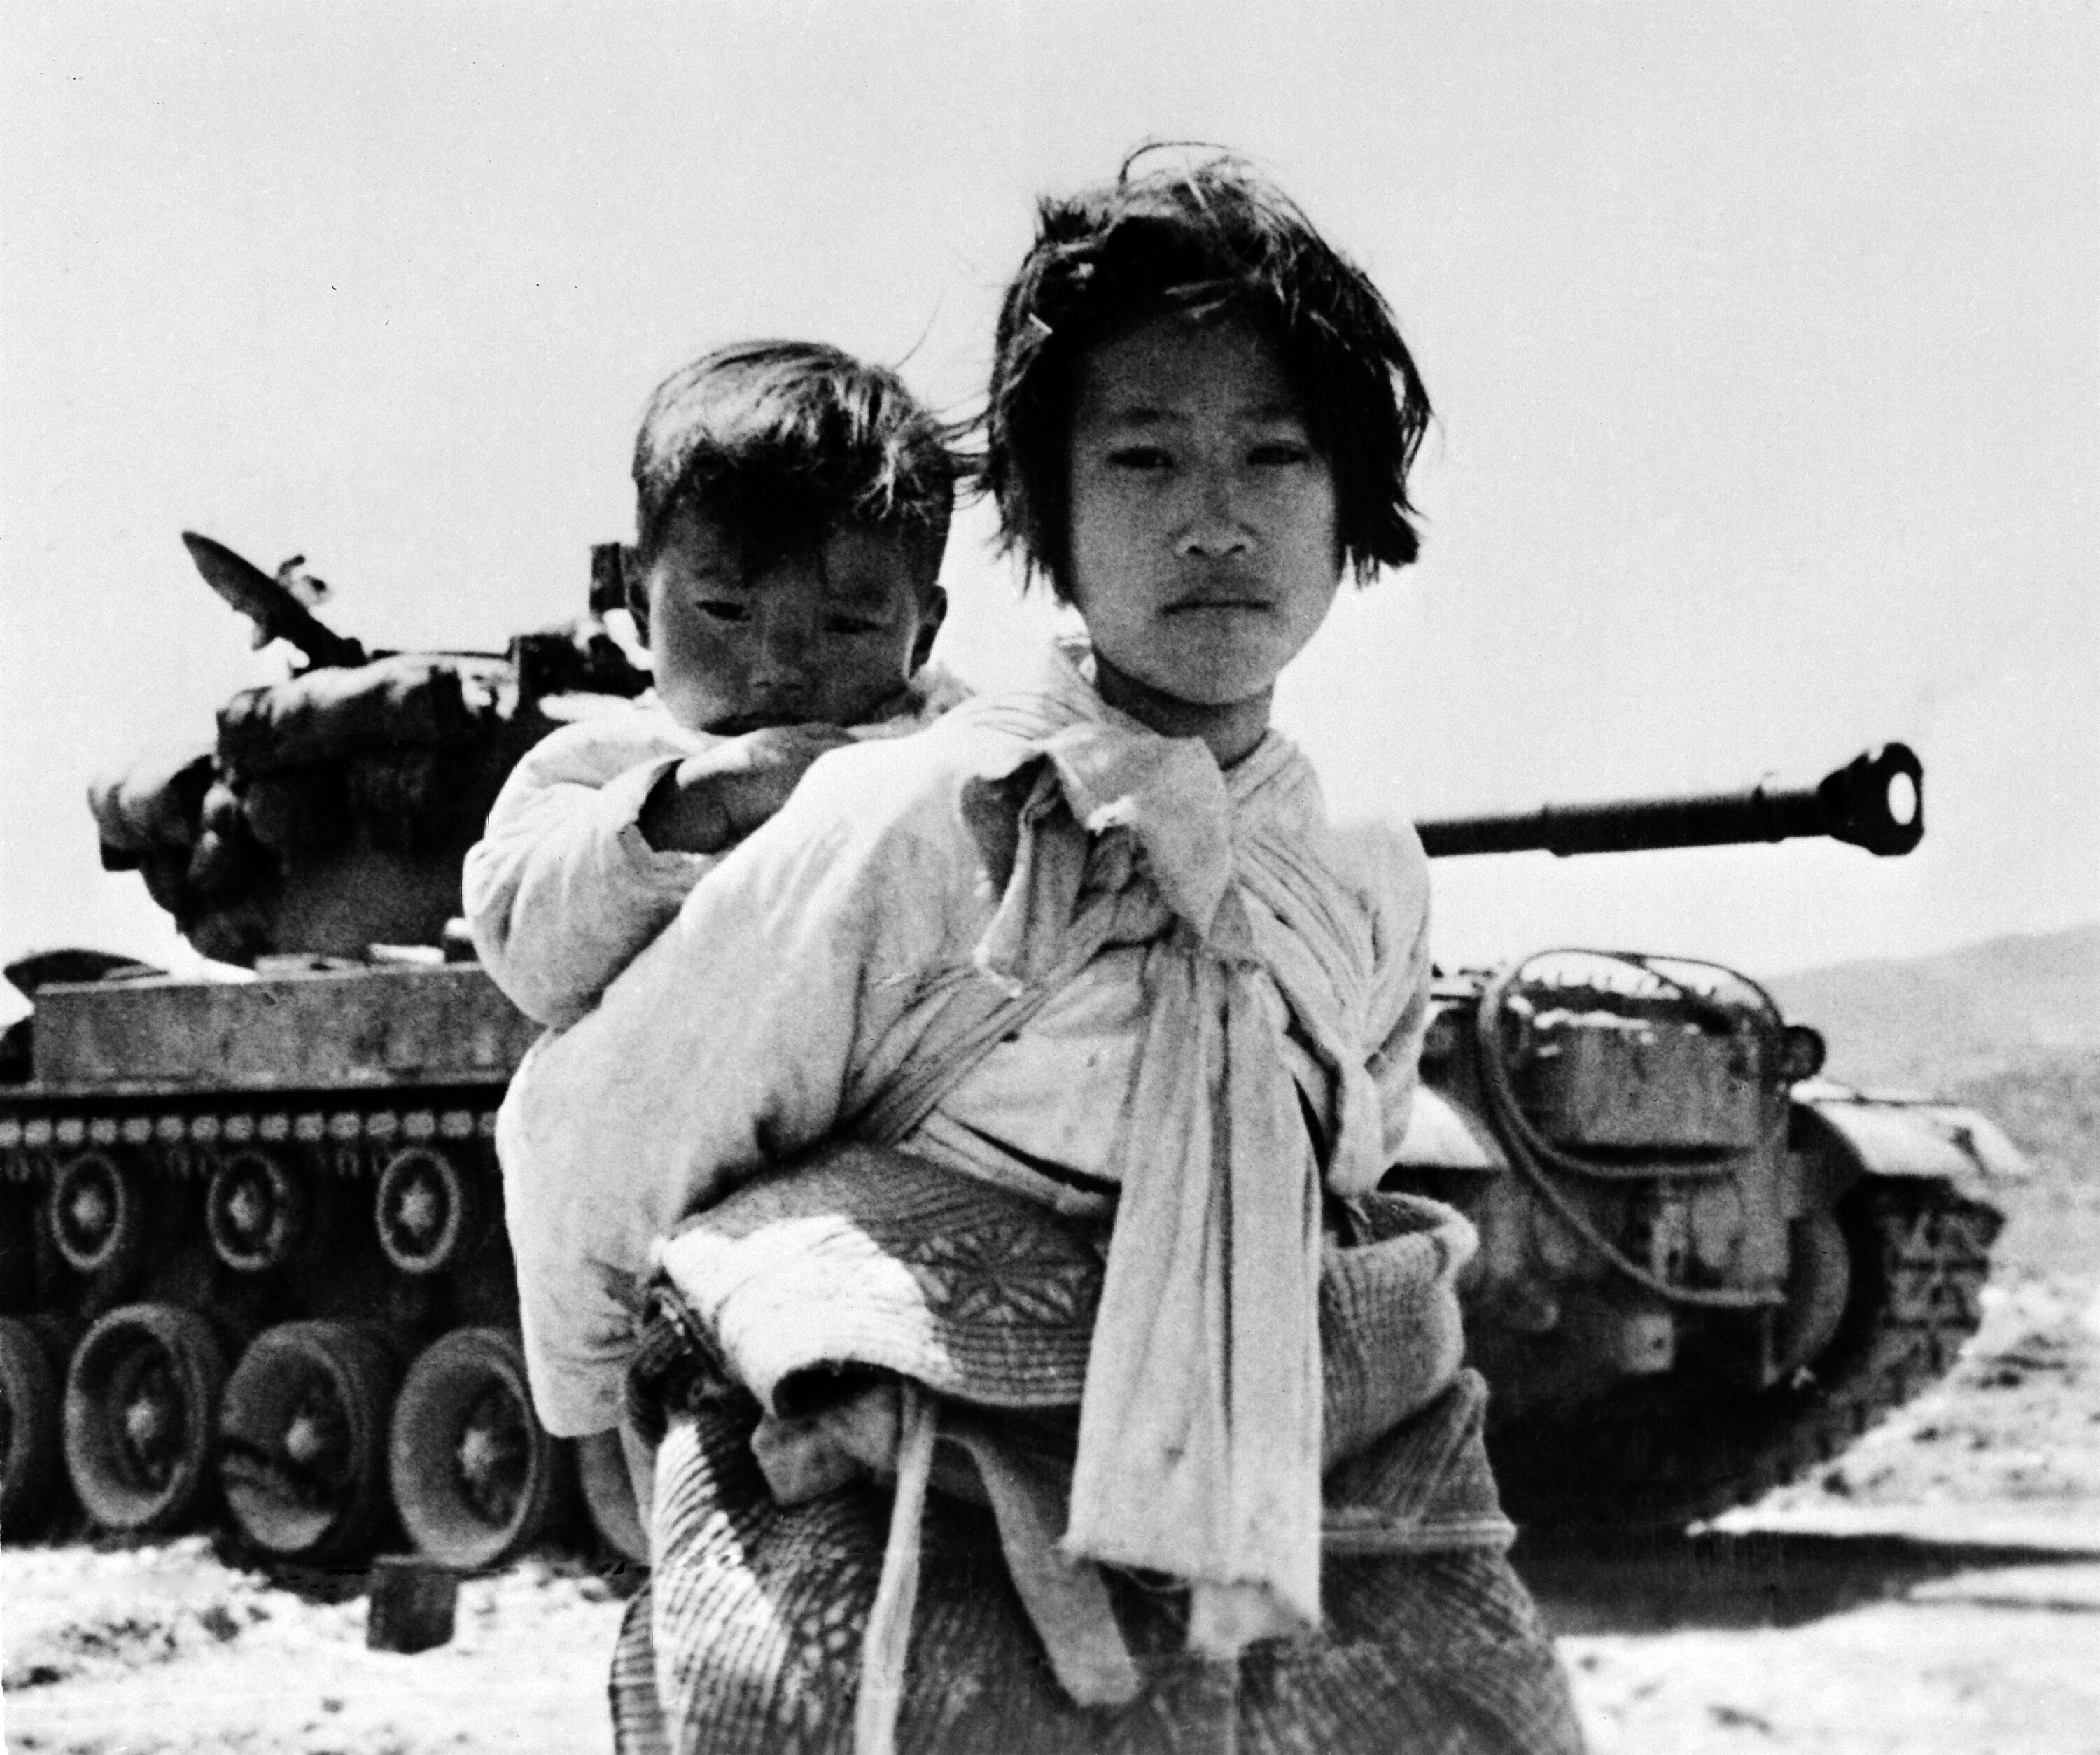 La guerra in Corea. Giugno 1951. Haengju, Republica di Corea. Autore sconosciuto. Foto n. 78321 © courtesy UN Photo/United States Navy